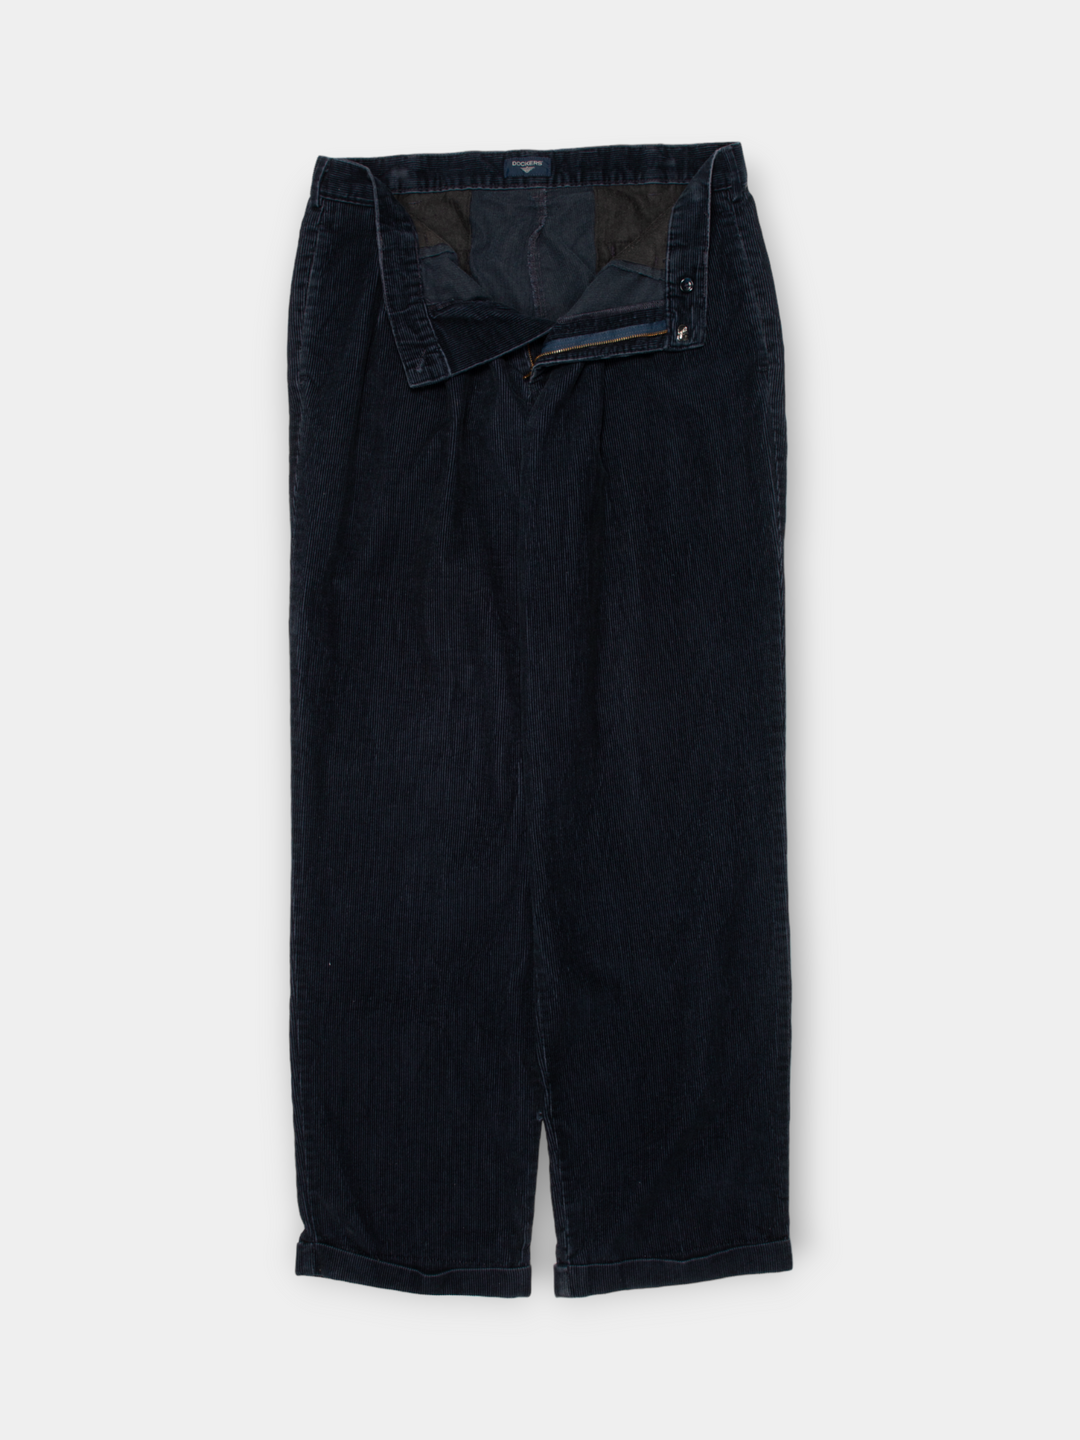 Vintage Dockers Corduroy Pants (36”)